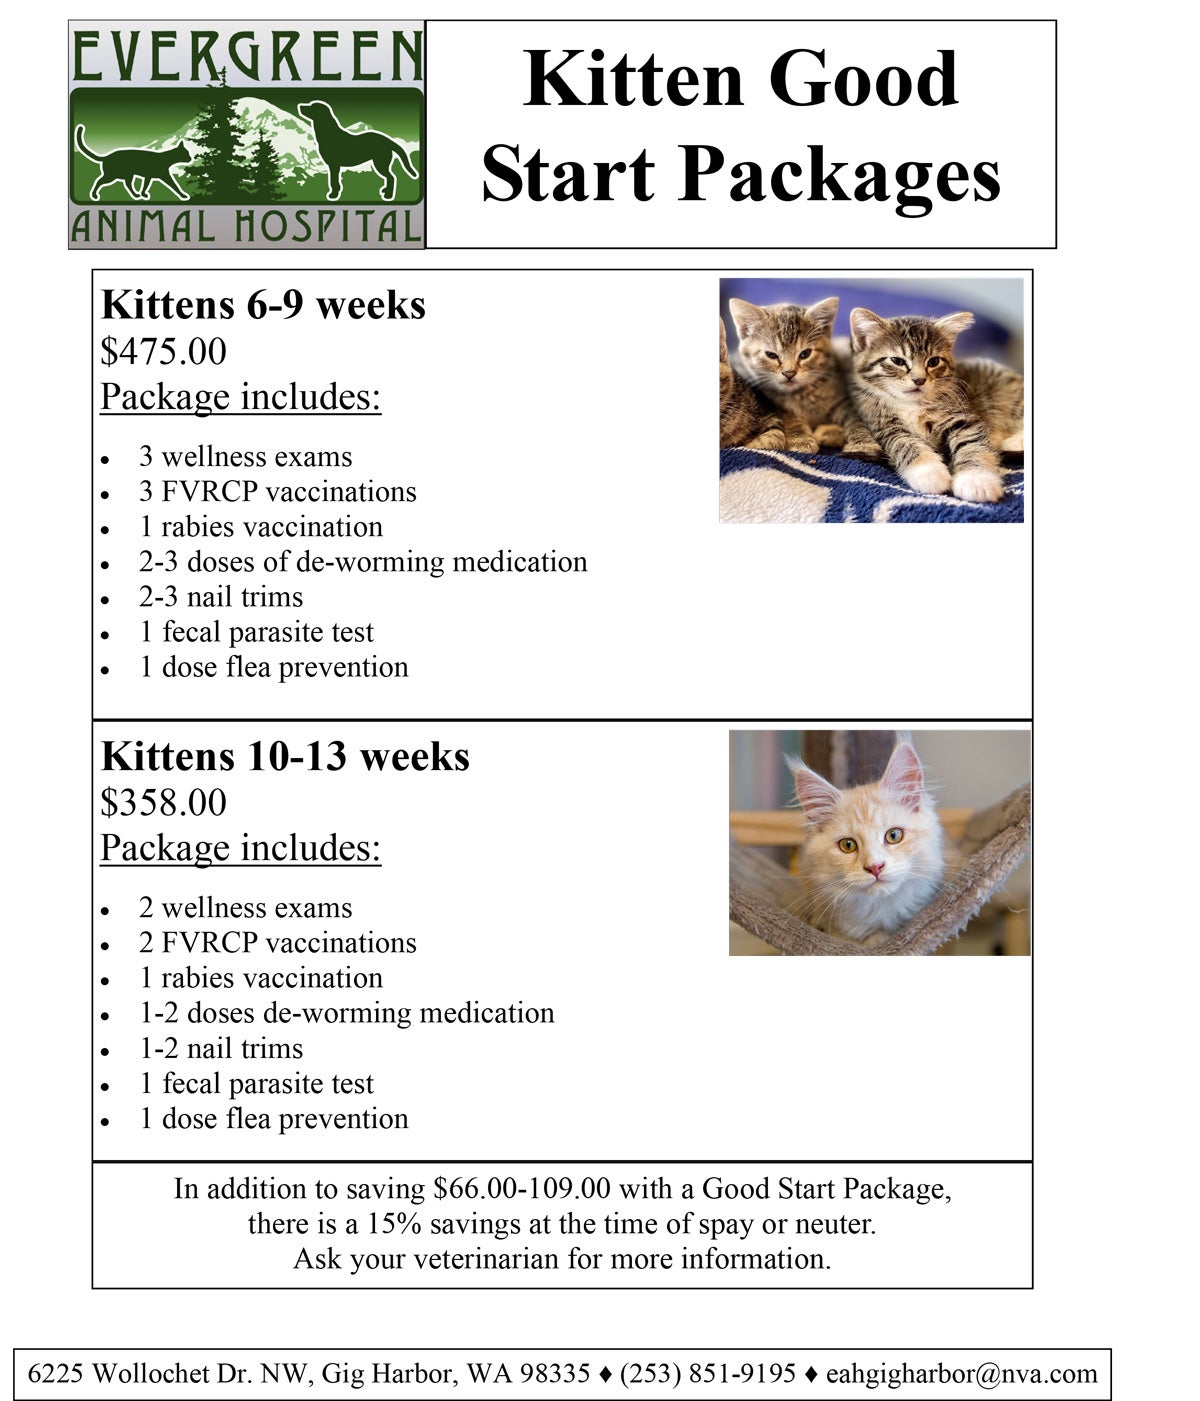 Kitten-Good-Start-Package-Flyer-for-Website.jpg